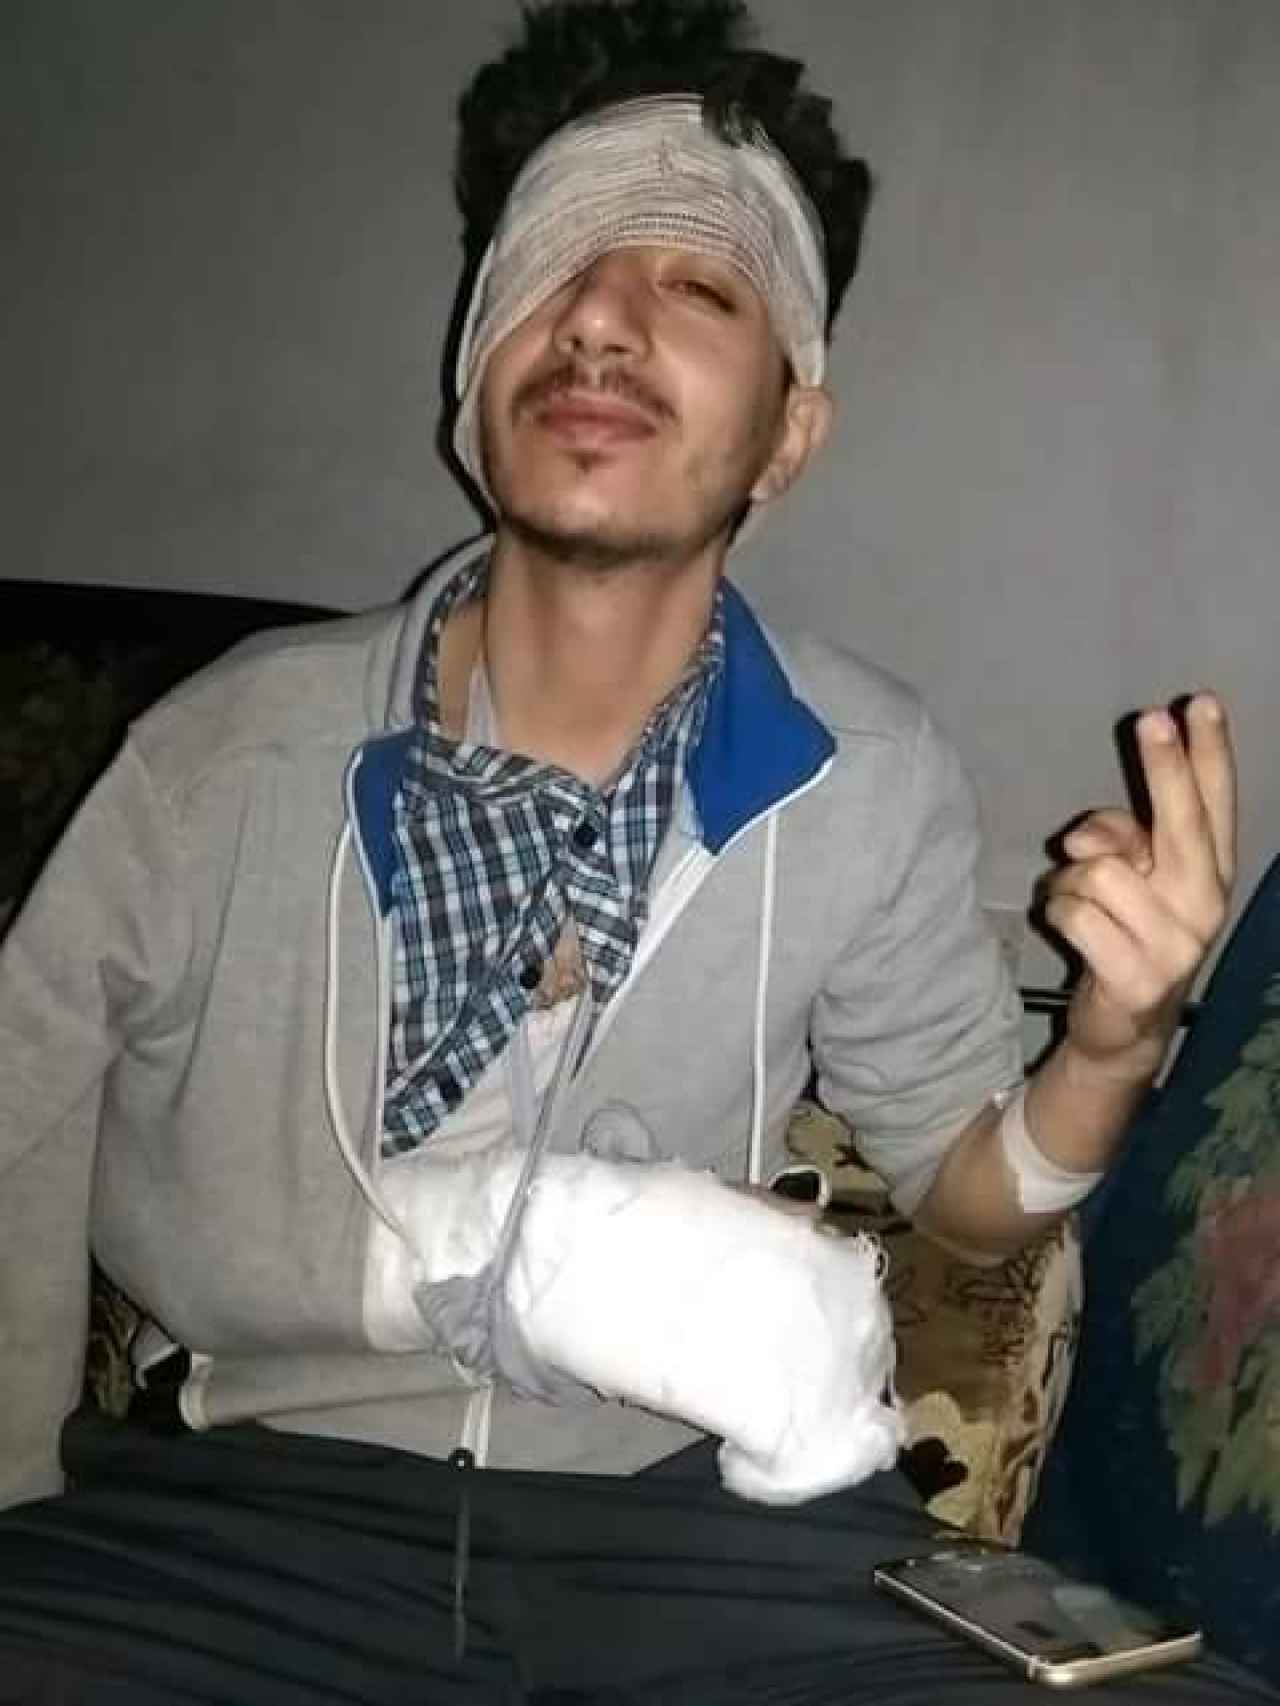 Mahmoud con su brazo escayolado.